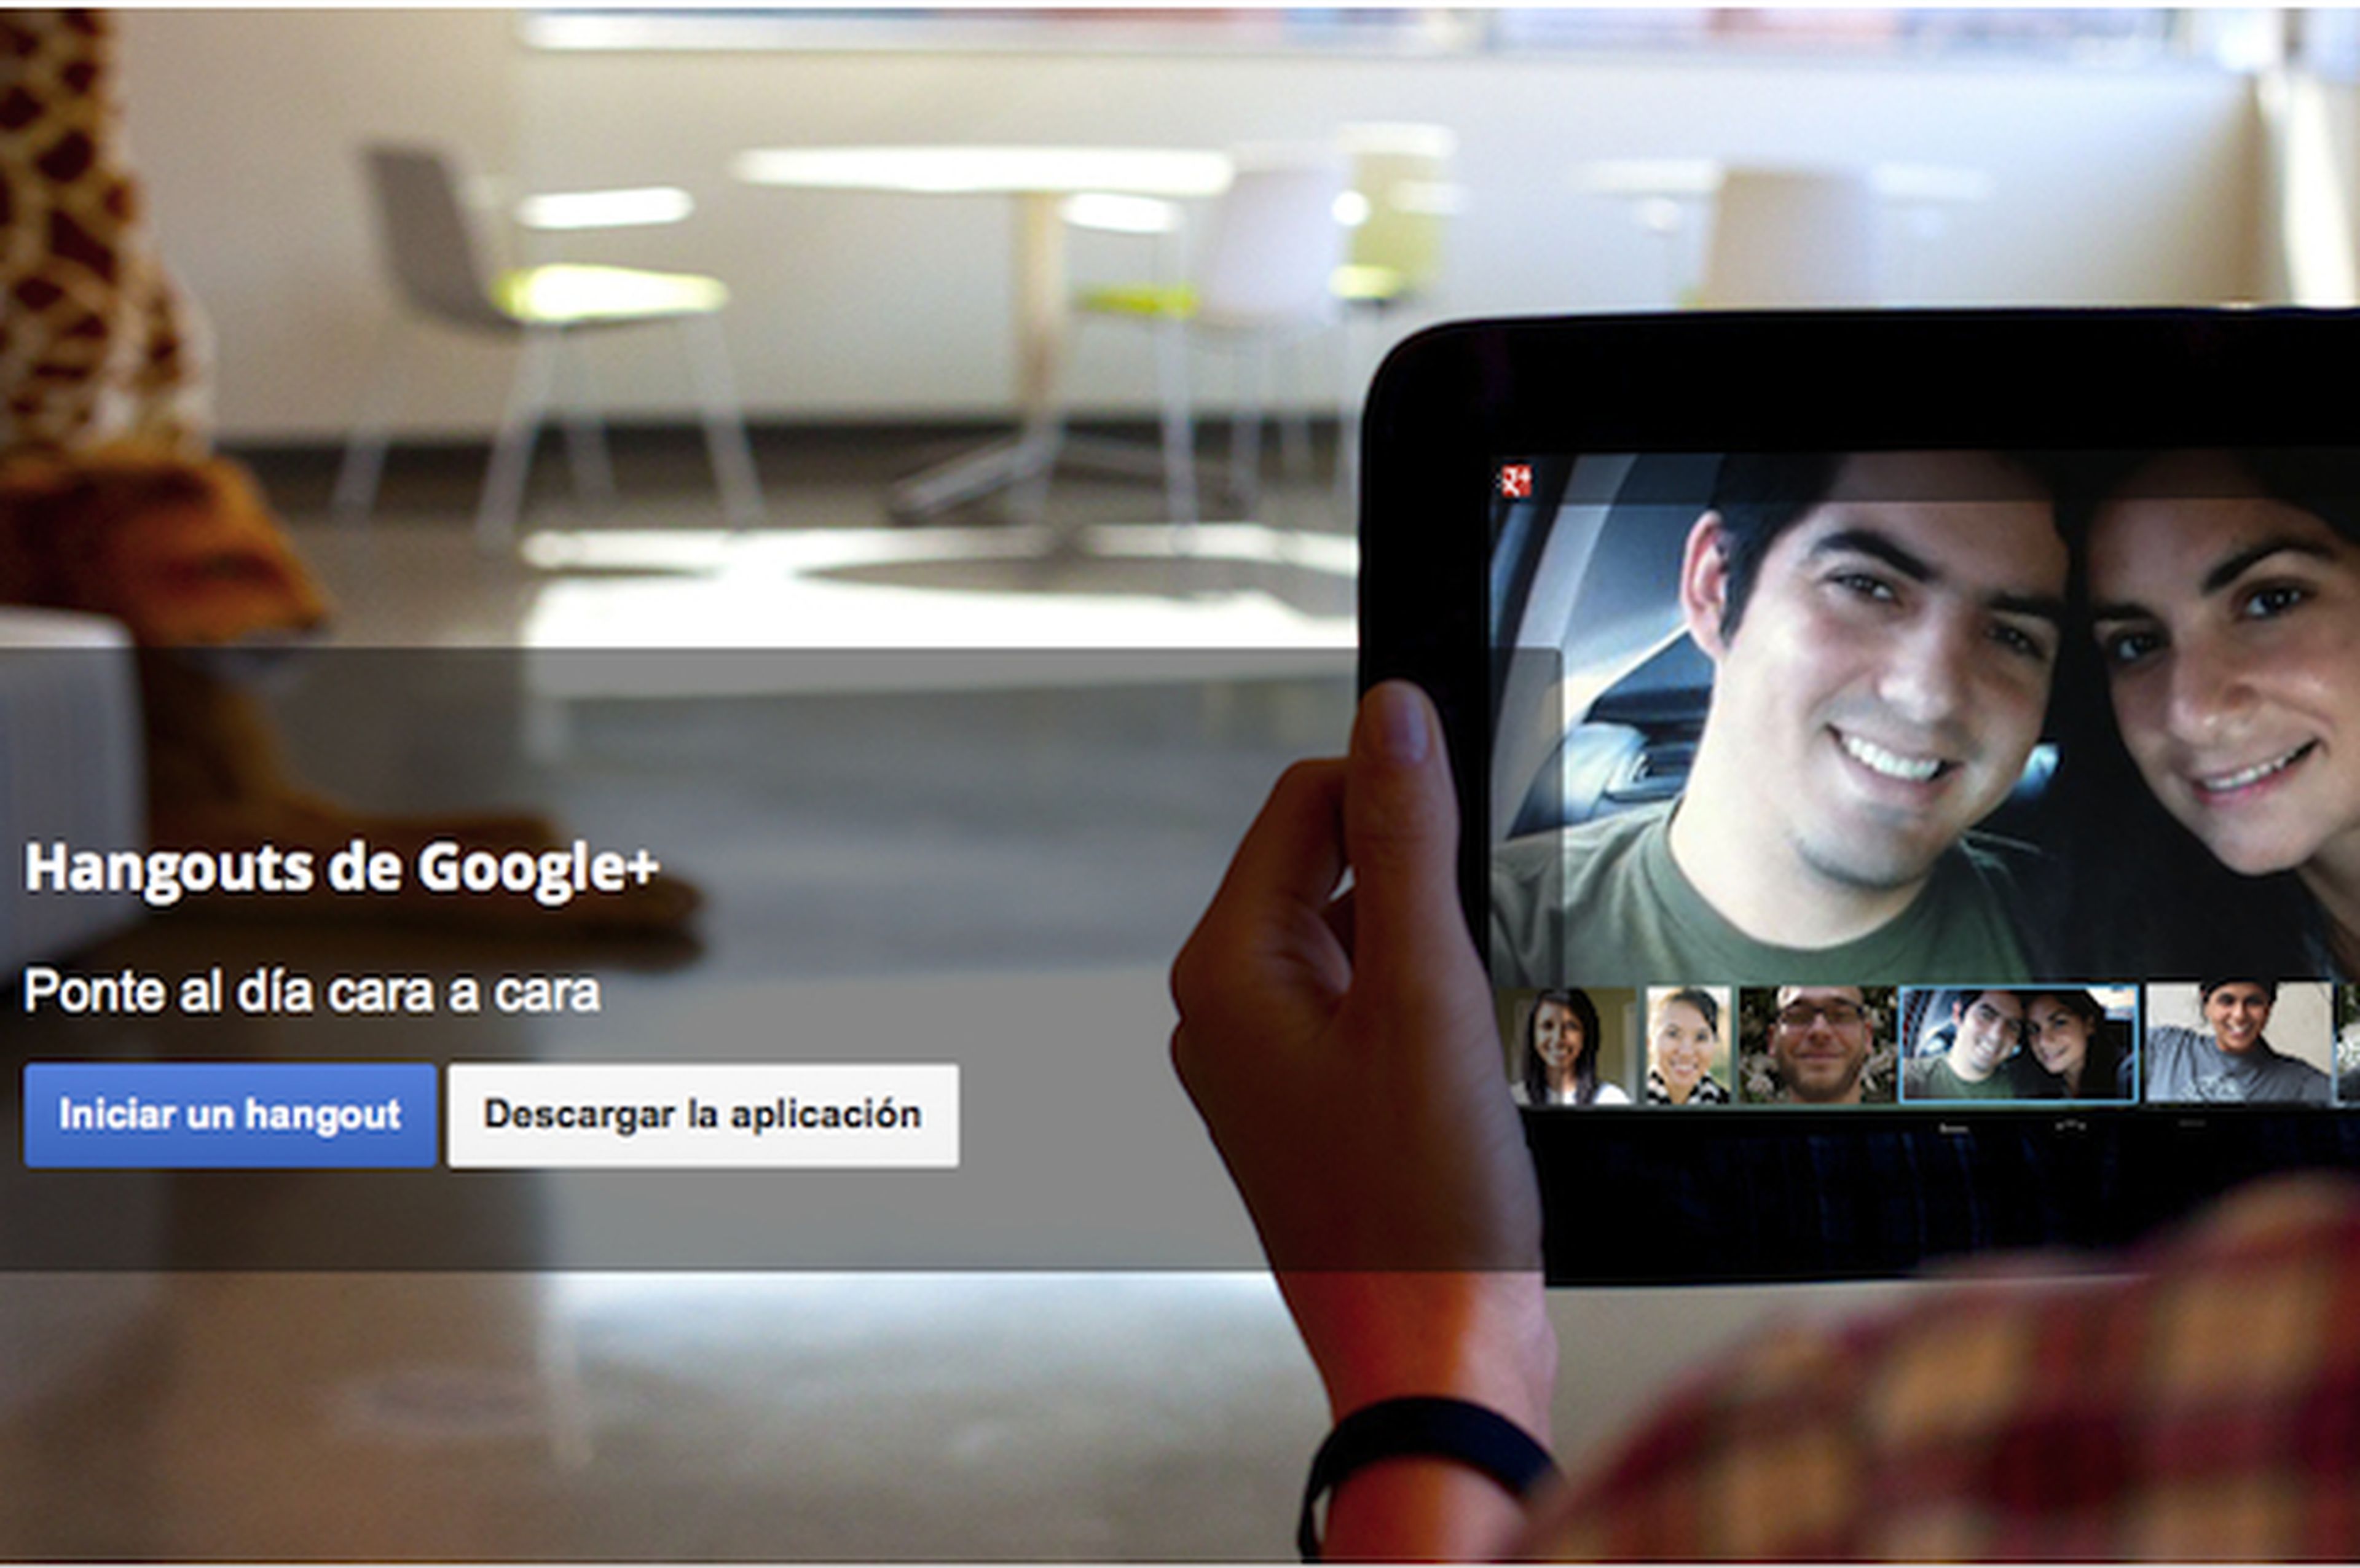 Inicia una videoconferencia en Google Plus con Hangouts